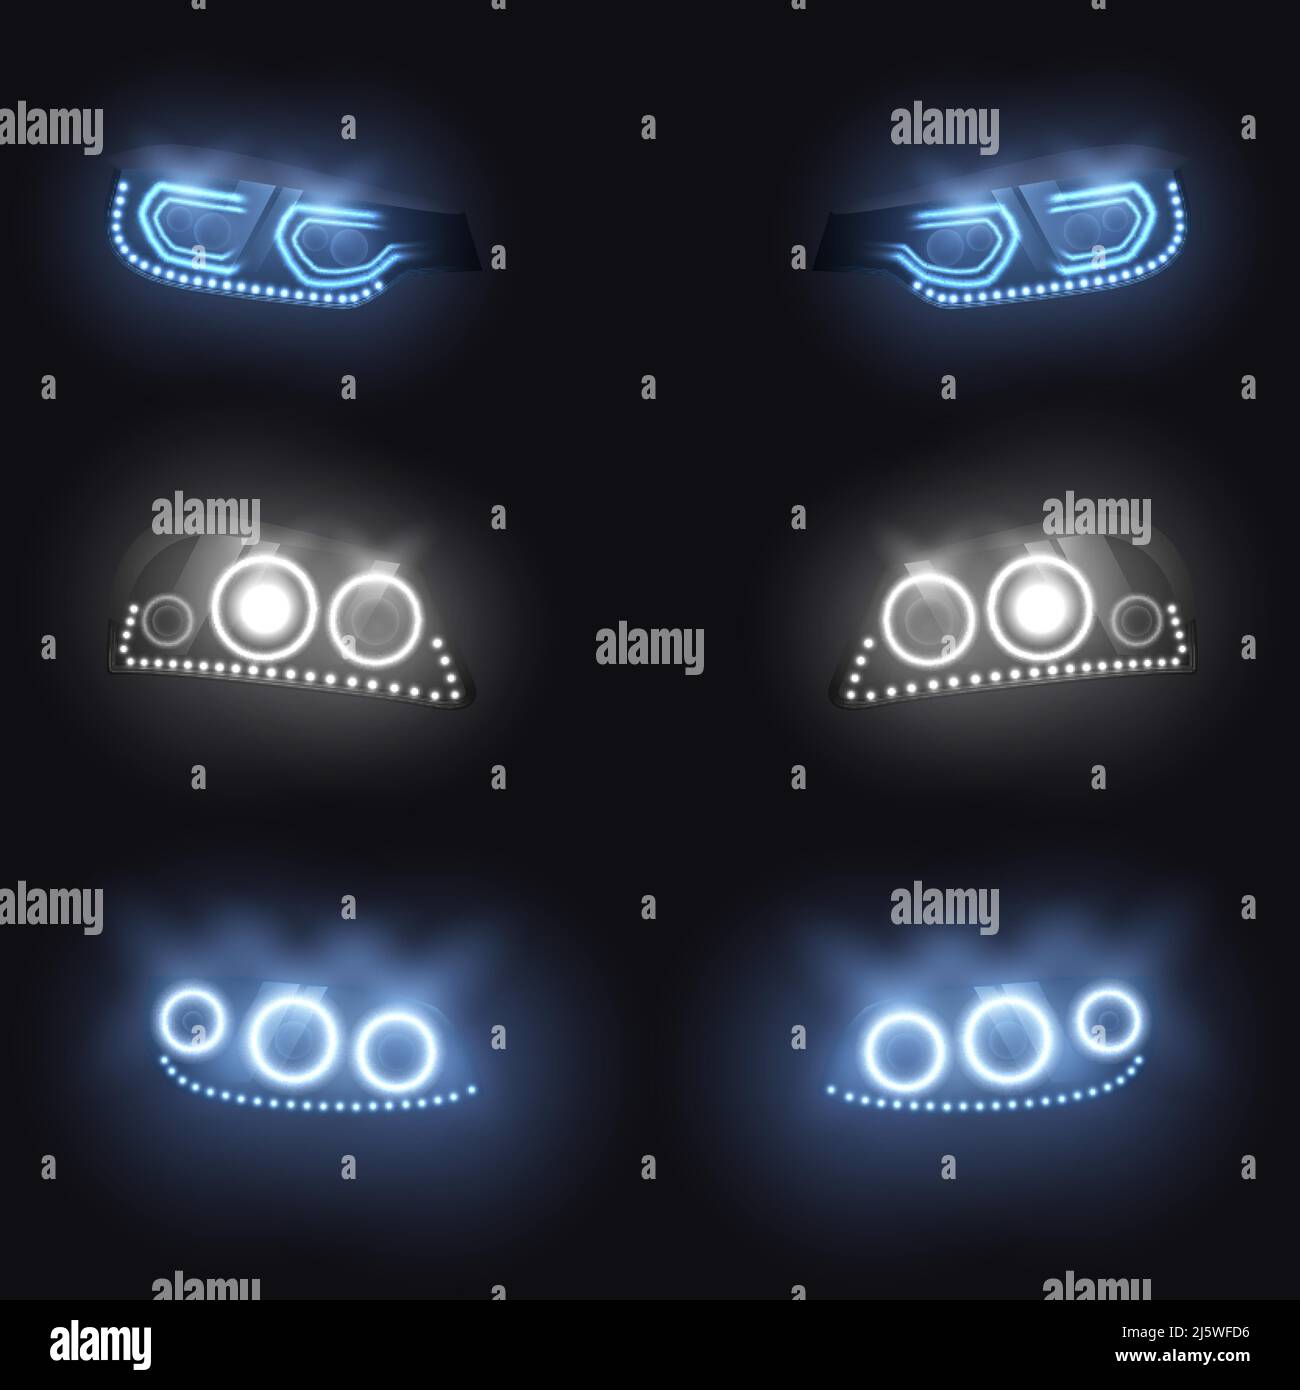 https://c8.alamy.com/compde/2j5wfd6/moderne-auto-front-oder-ruckscheinwerfer-mit-xenon-laser-oder-led-lampen-leuchtendes-neon-weiss-blaues-licht-in-der-dunkelheit-realistisches-vektor-illustrationsset-isola-2j5wfd6.jpg